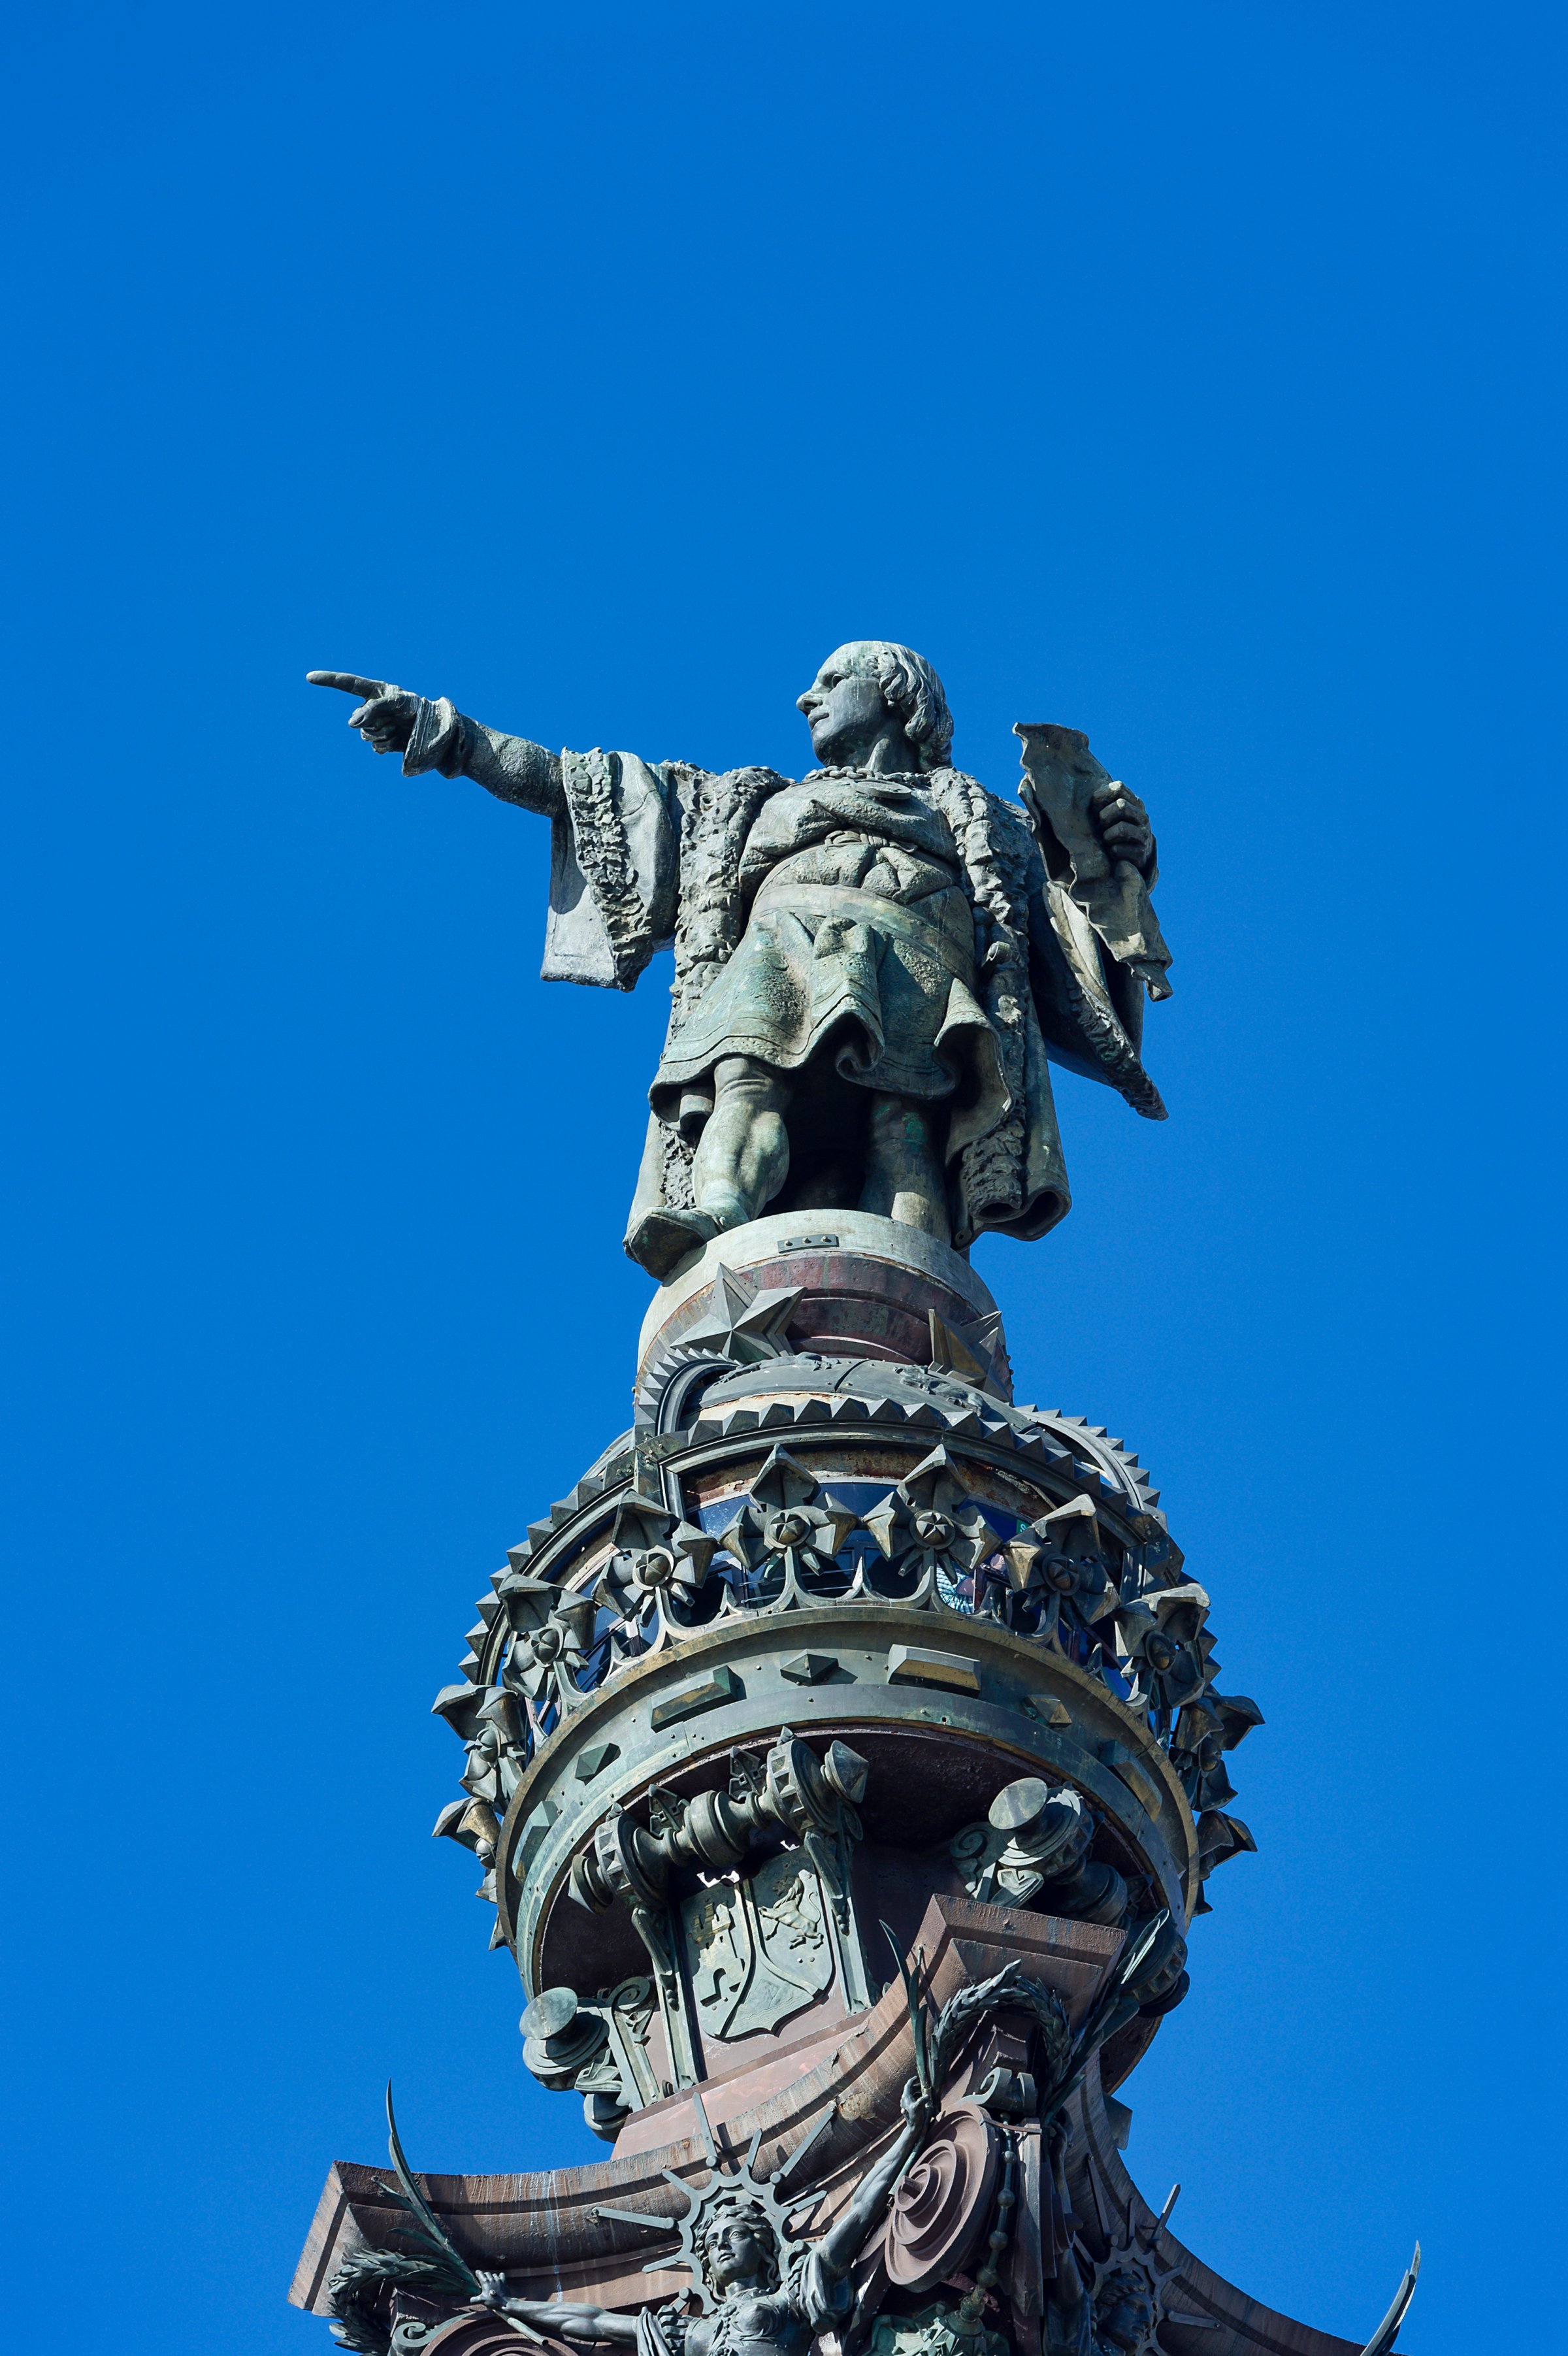 The Columbus Monument in Barcelona, Nov. 8, 2013.